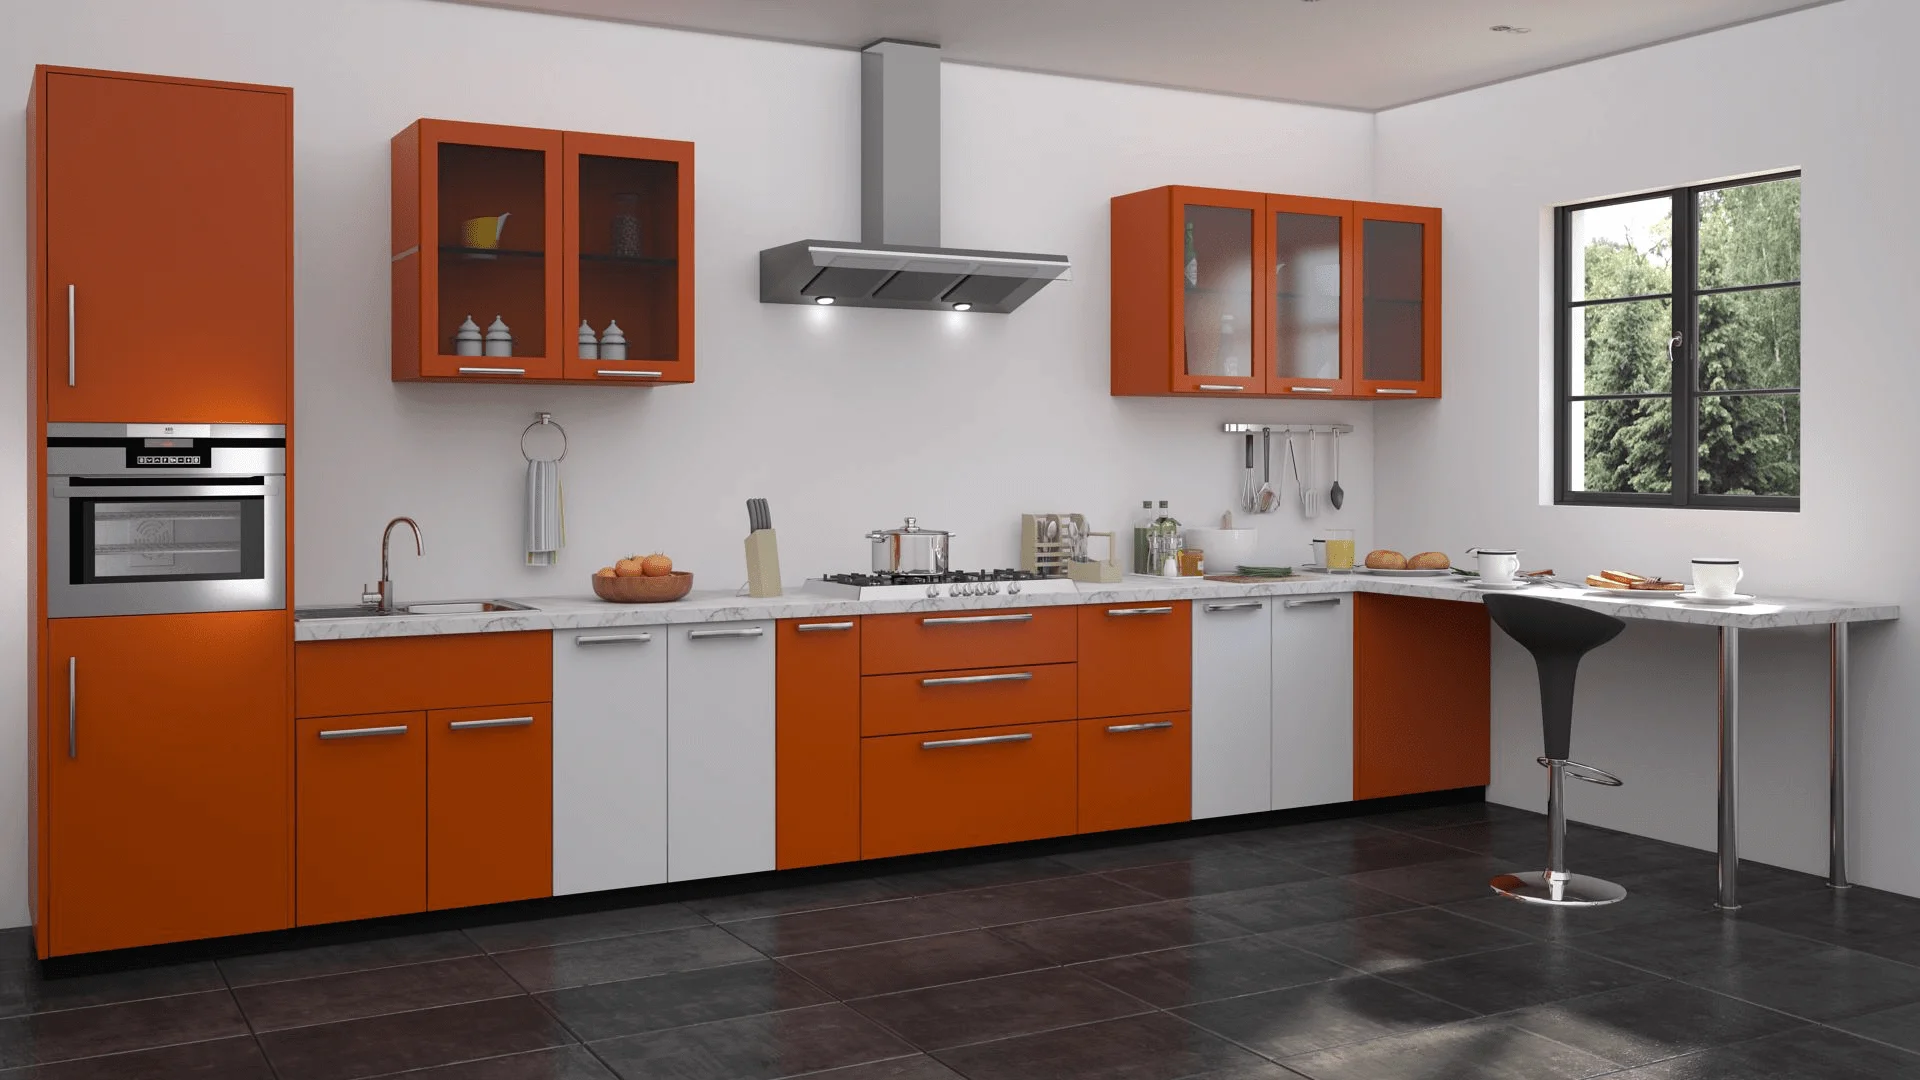 granite kitchen countertops design in nj